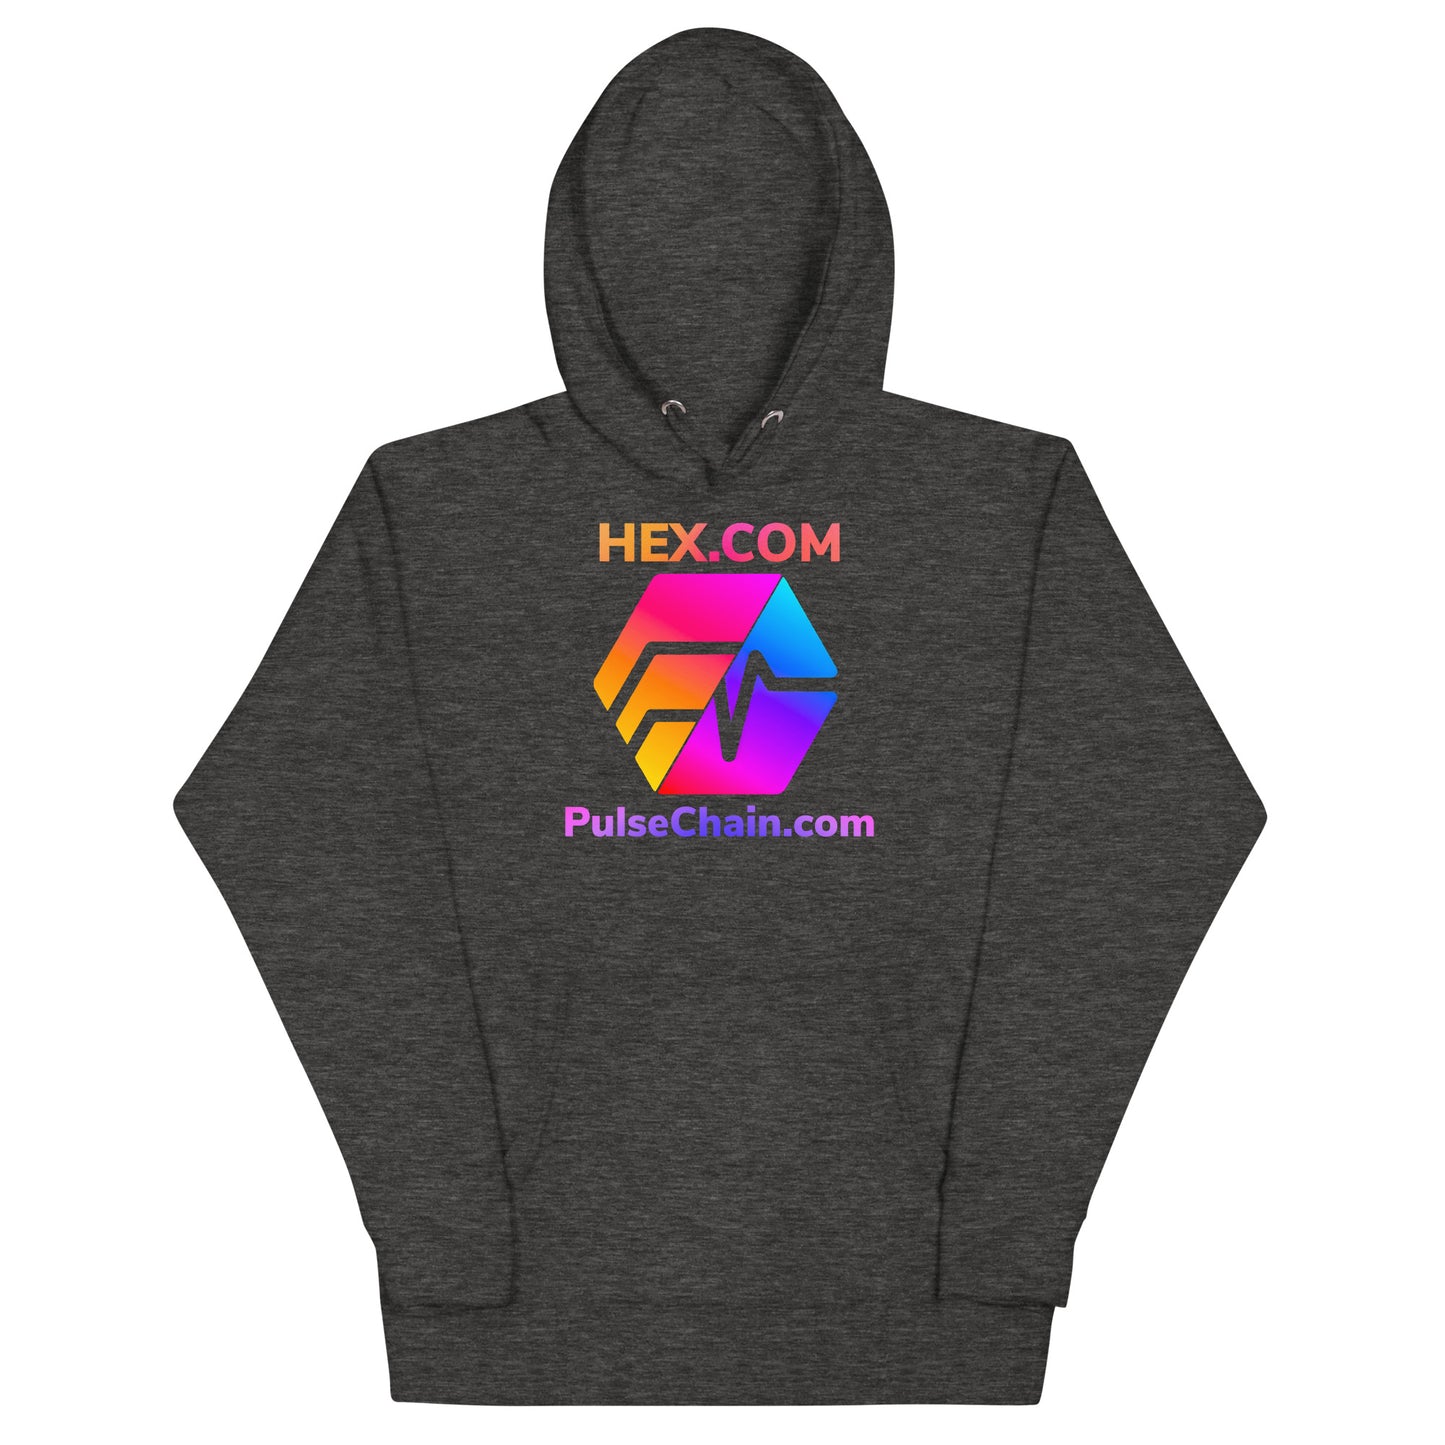 HEX.COM/PulseChain.com Unisex Premium Hoodie